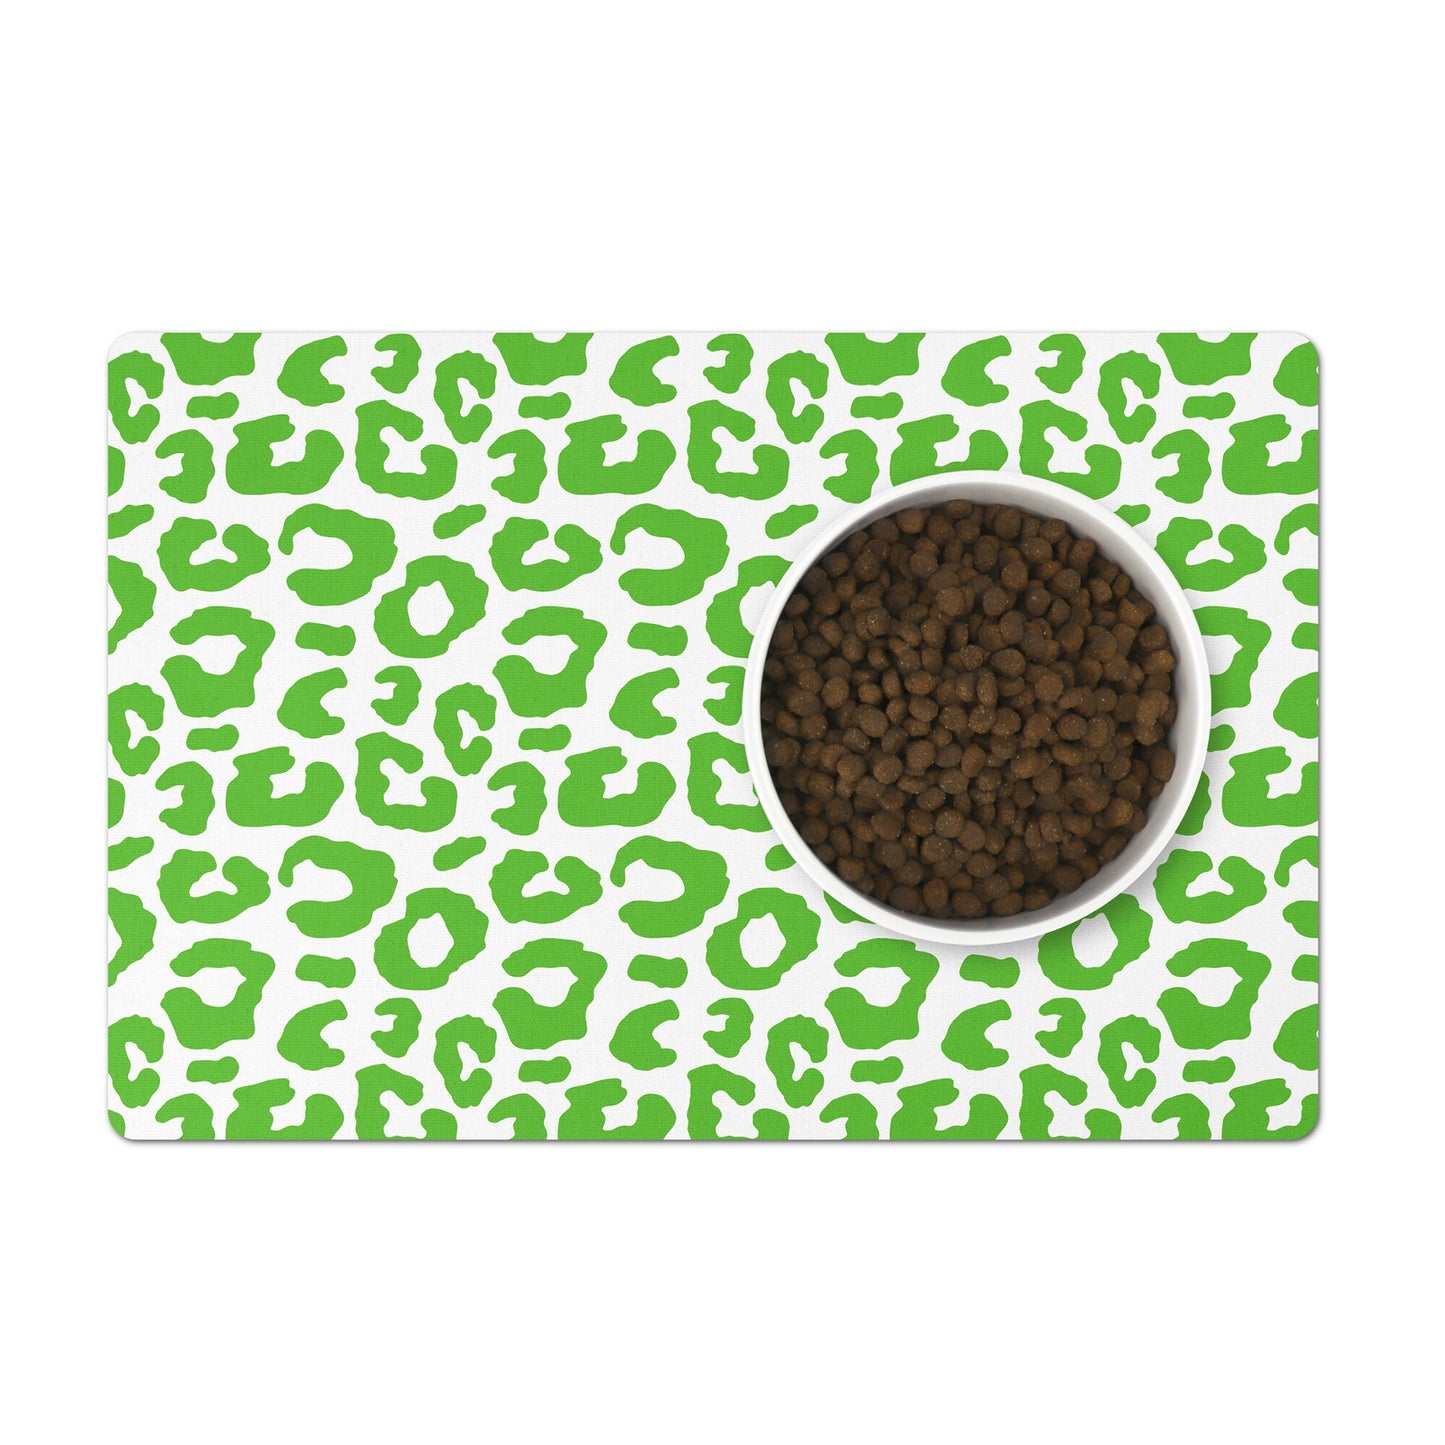 Pet Feeding Mat, Leopard Print, Grass Green and White